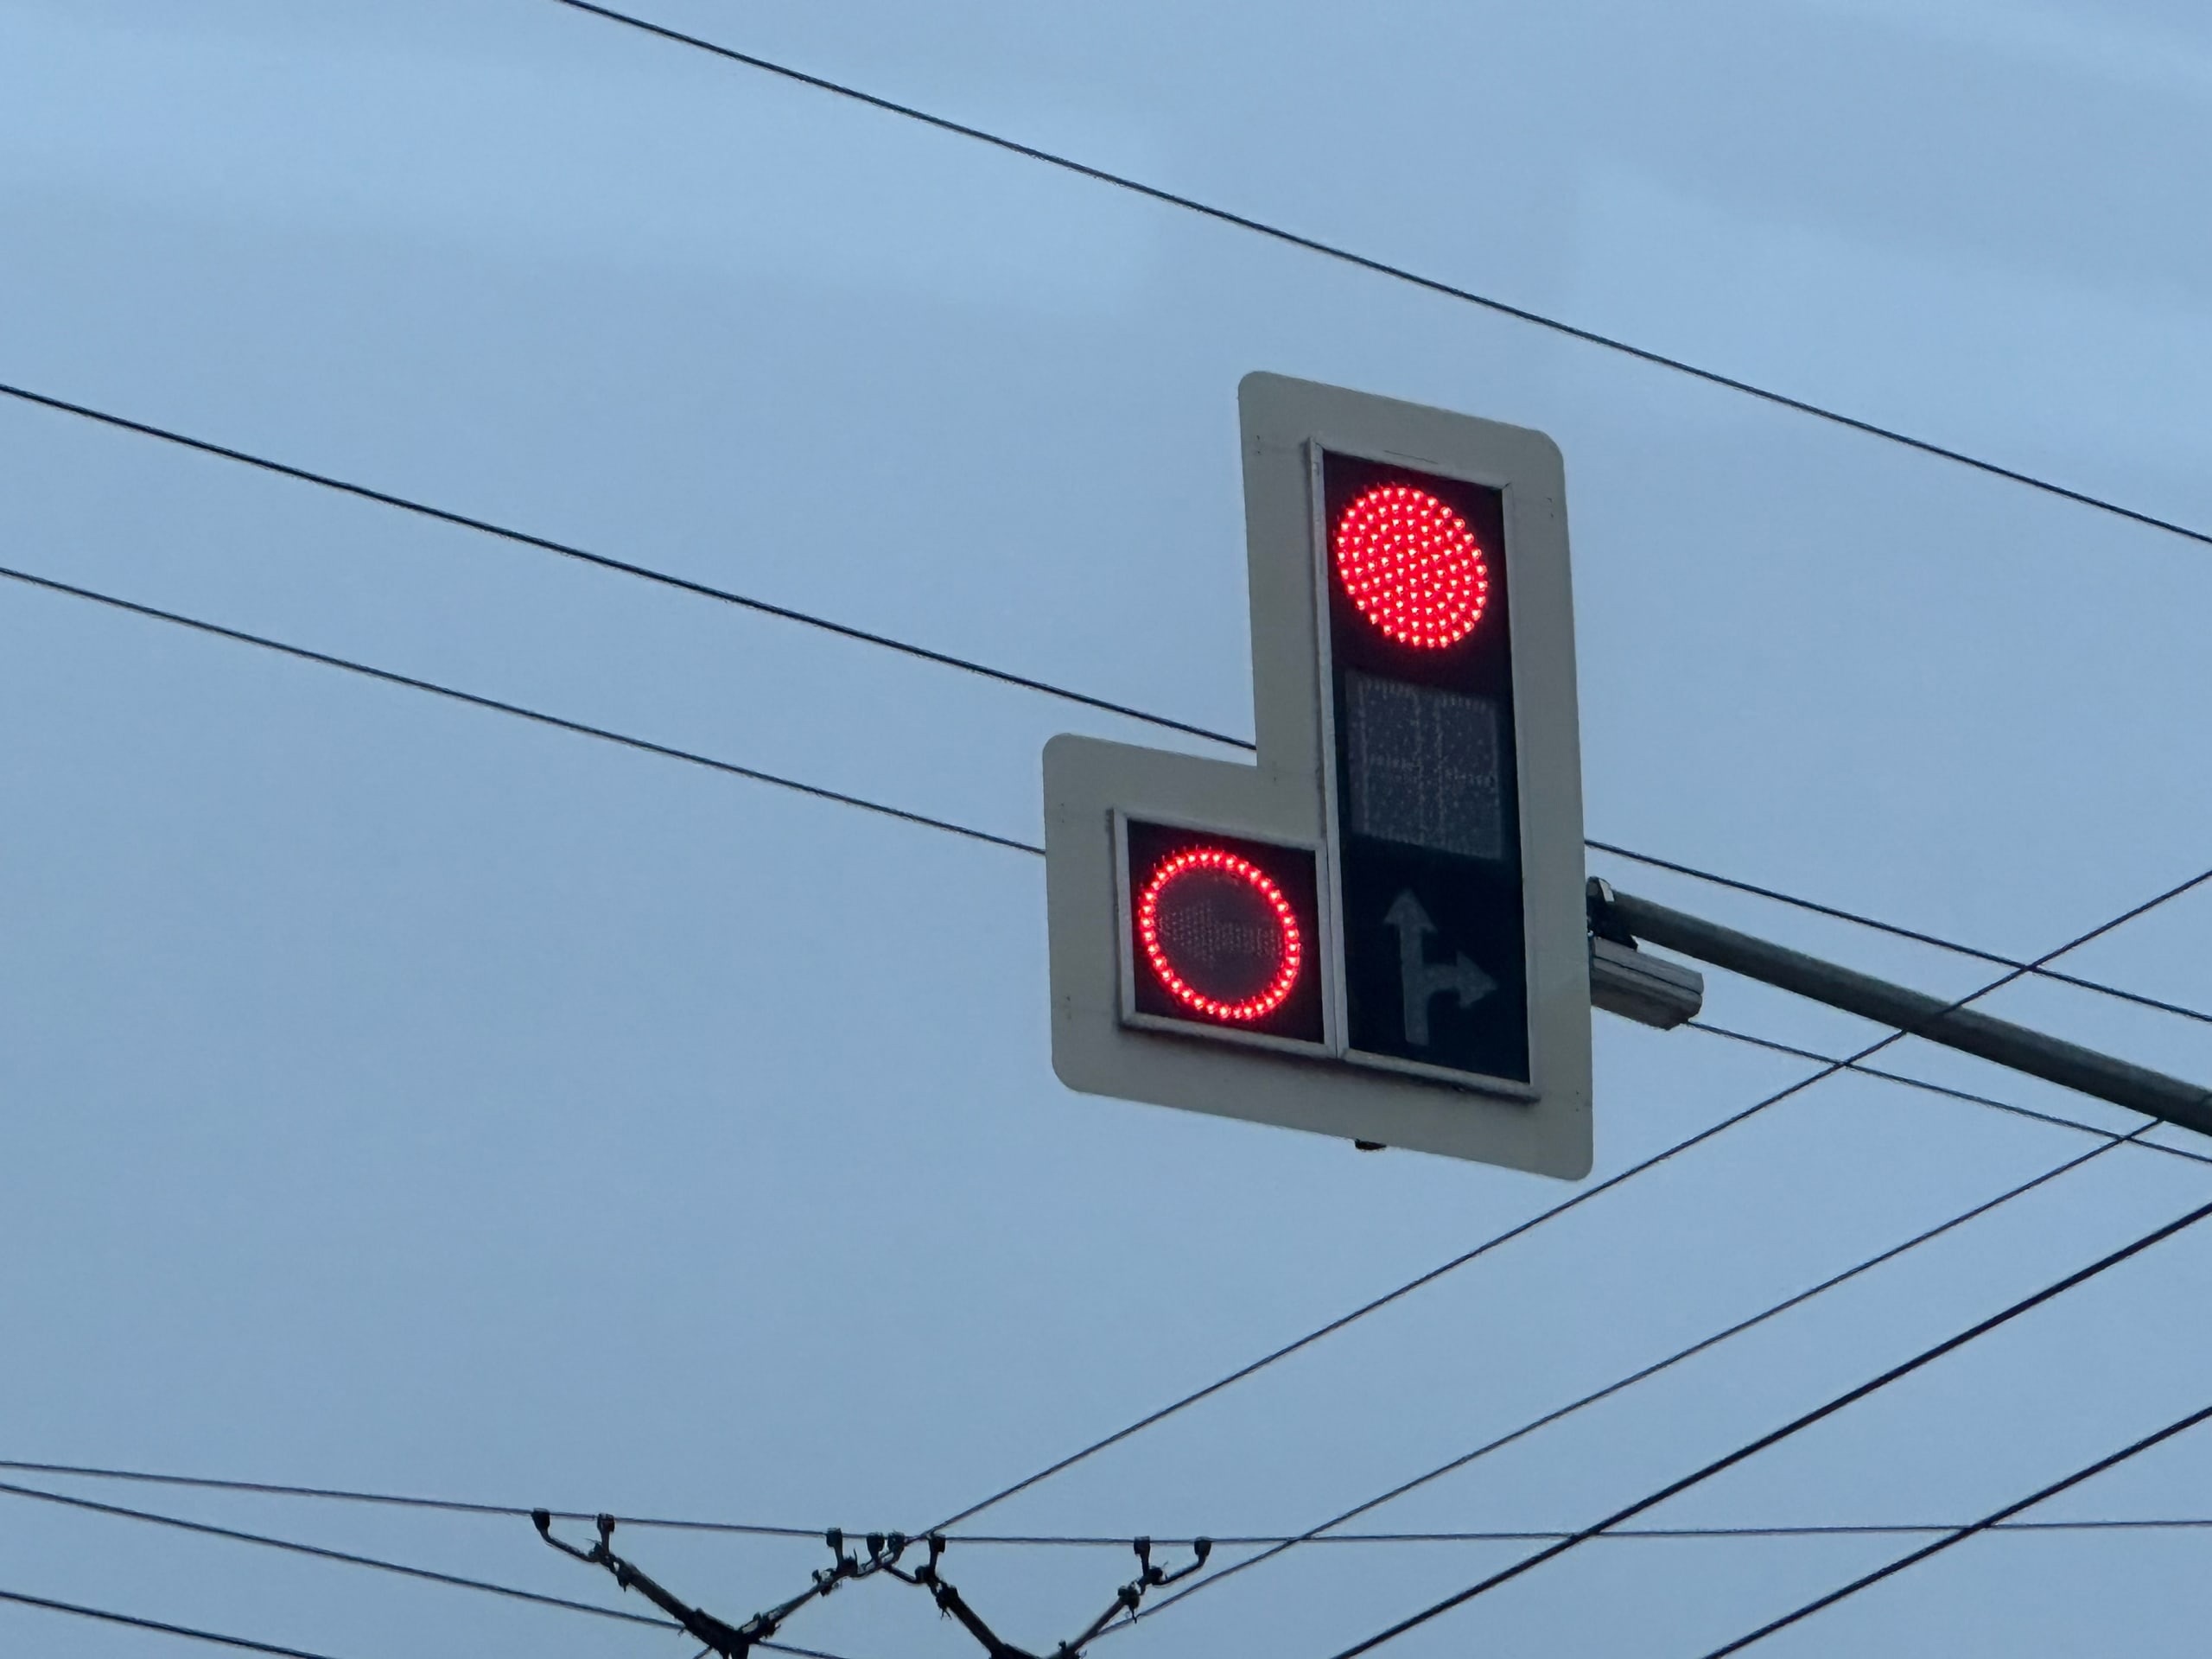 Изменен режим работы светофора на перекрестке Измайлова- Стрельбищенская